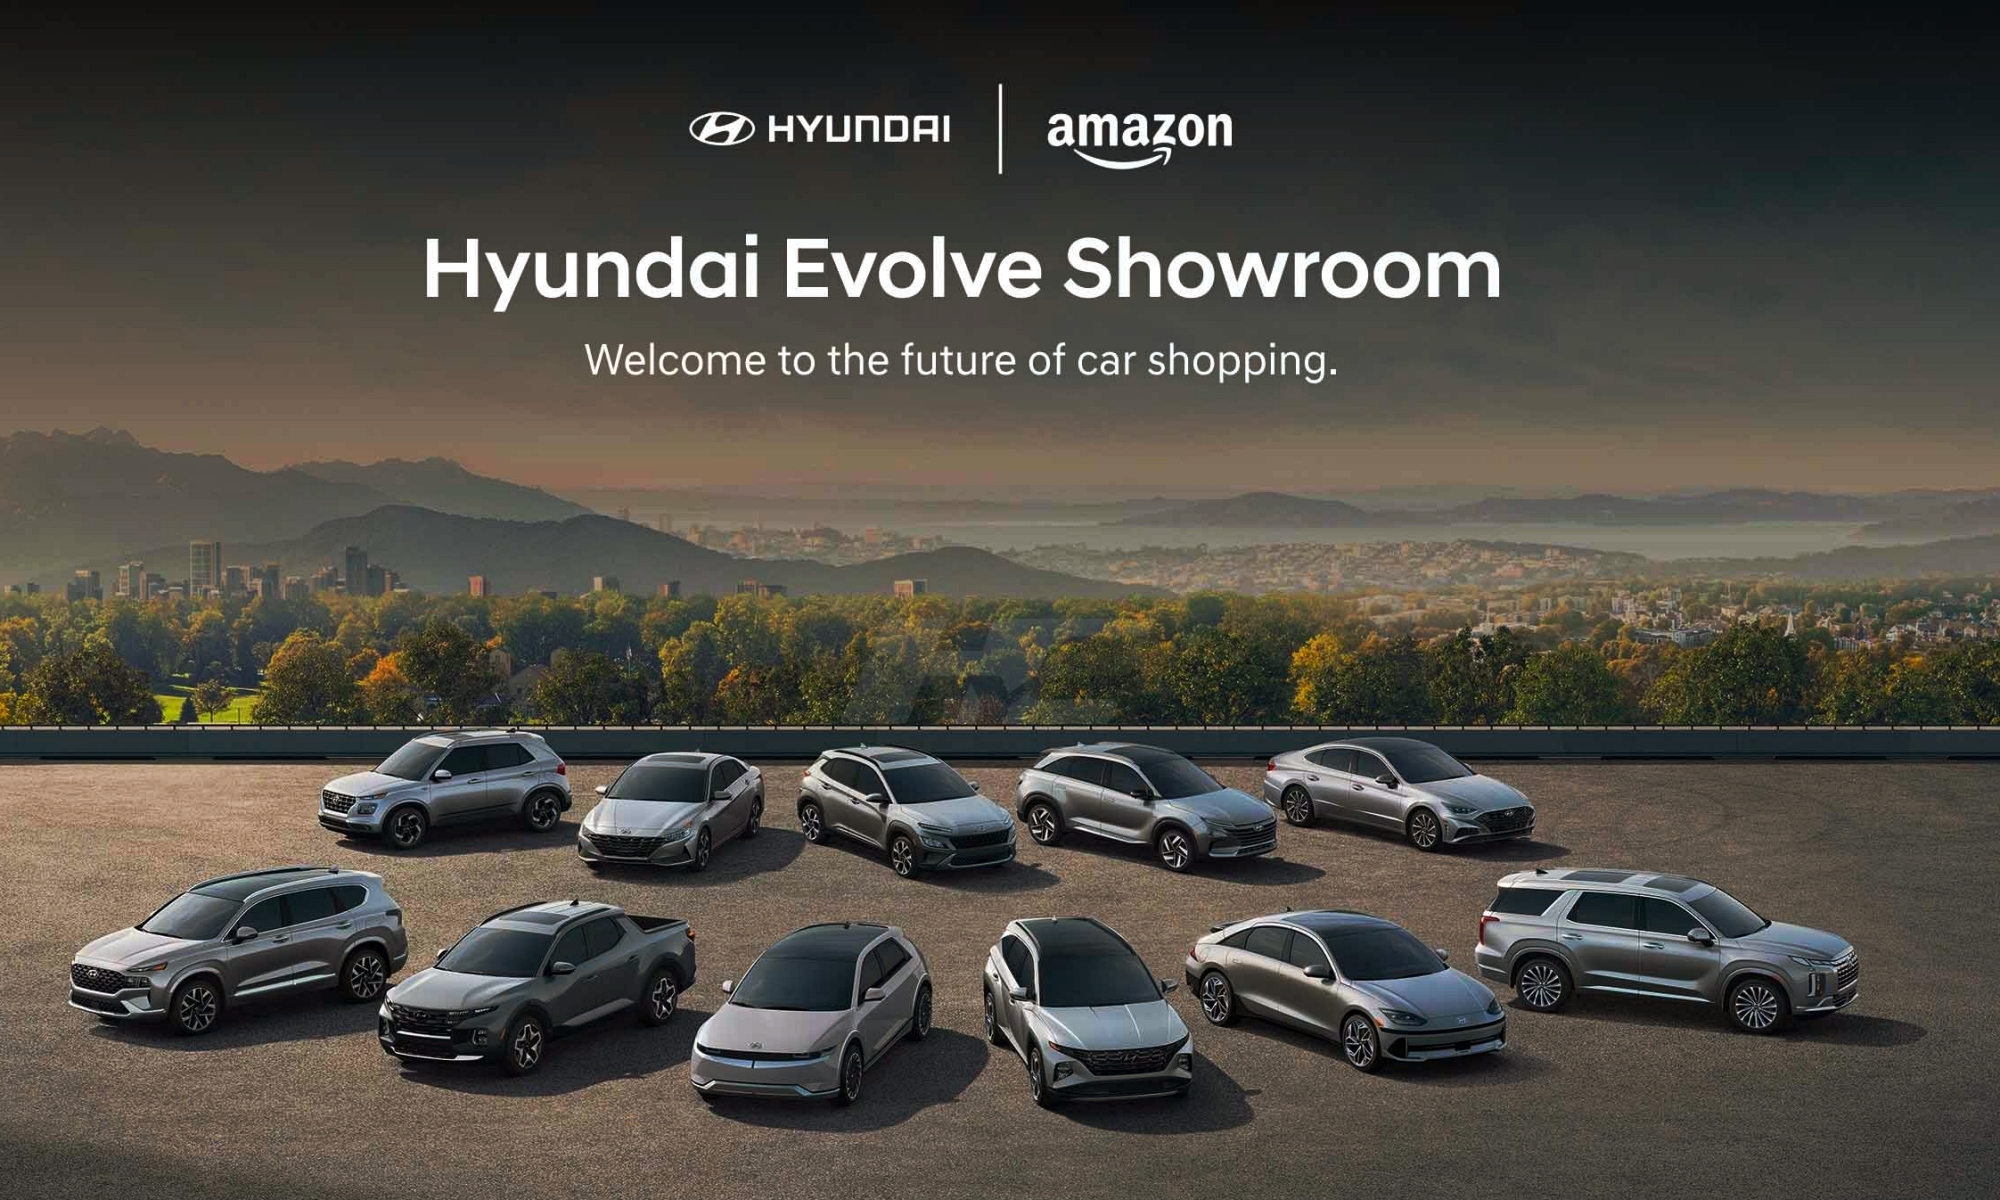 La marca ya comercializa coches en Amazon.